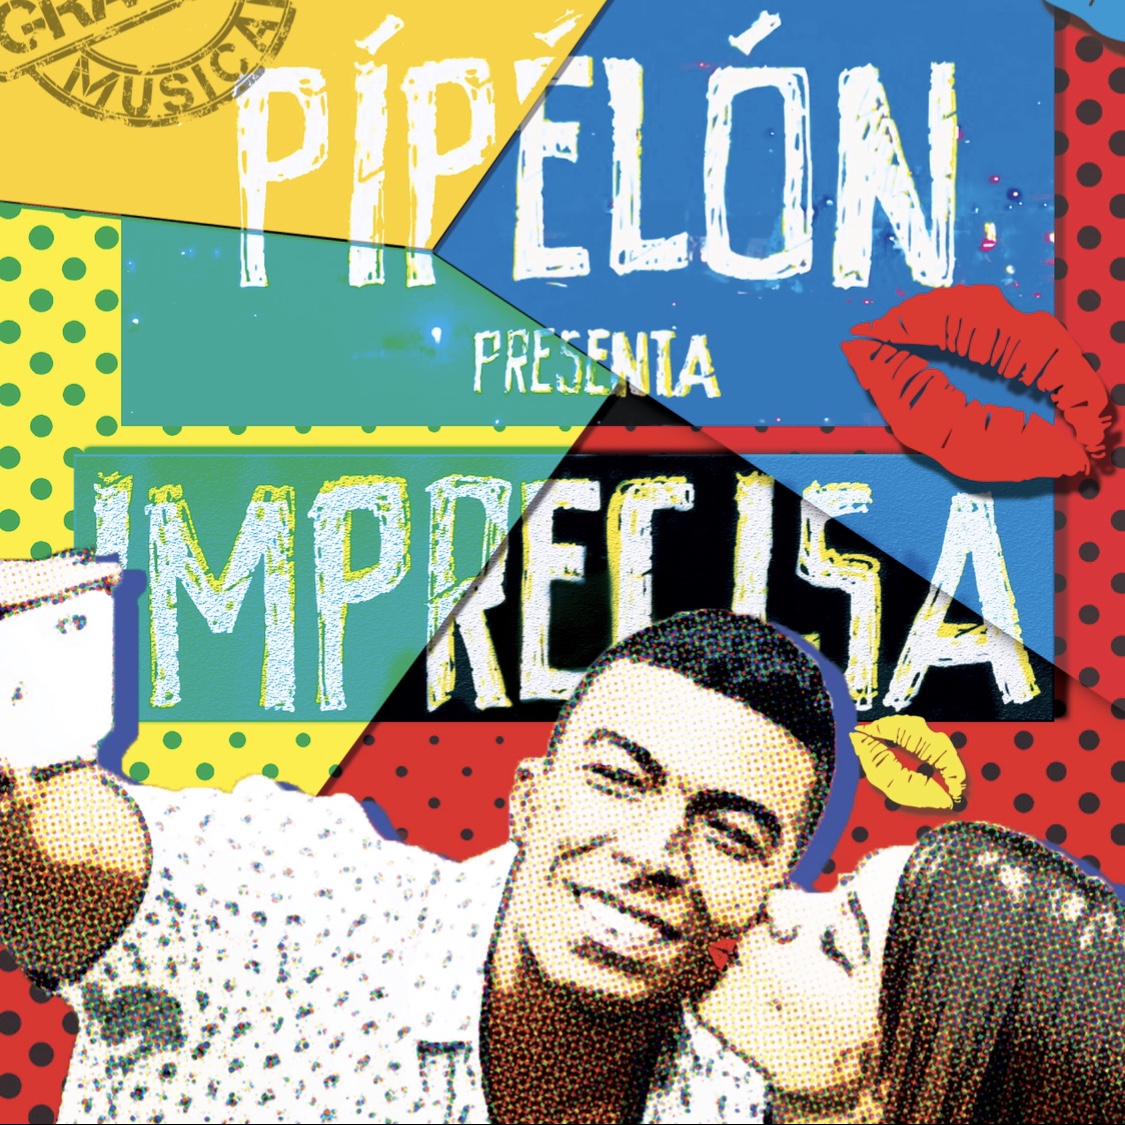 PÍPÉLÓN presenta su lanzamiento musical “La Imprecisa”